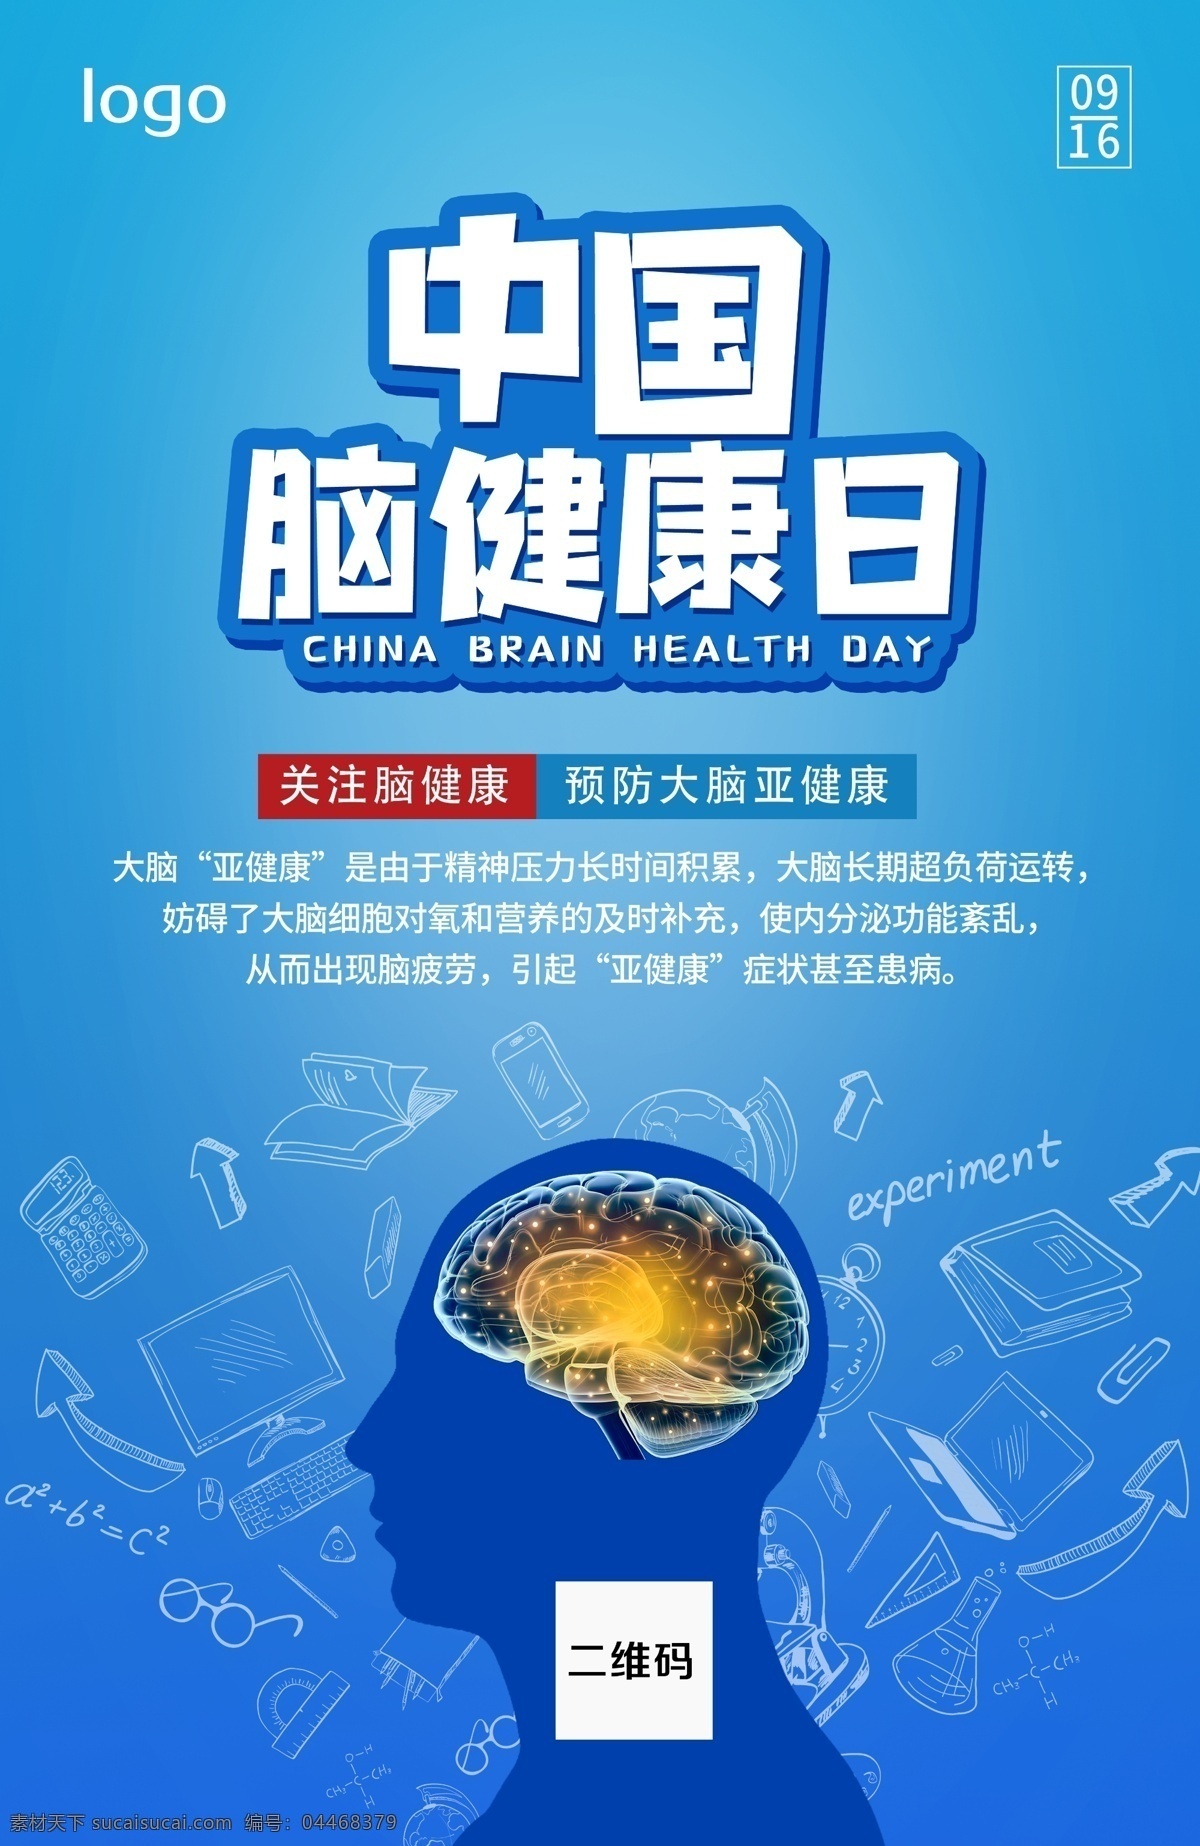 中国脑健康日 健康 医疗 疾病日 脑健康 蓝色大气 蓝色简约 脑健康日 海报